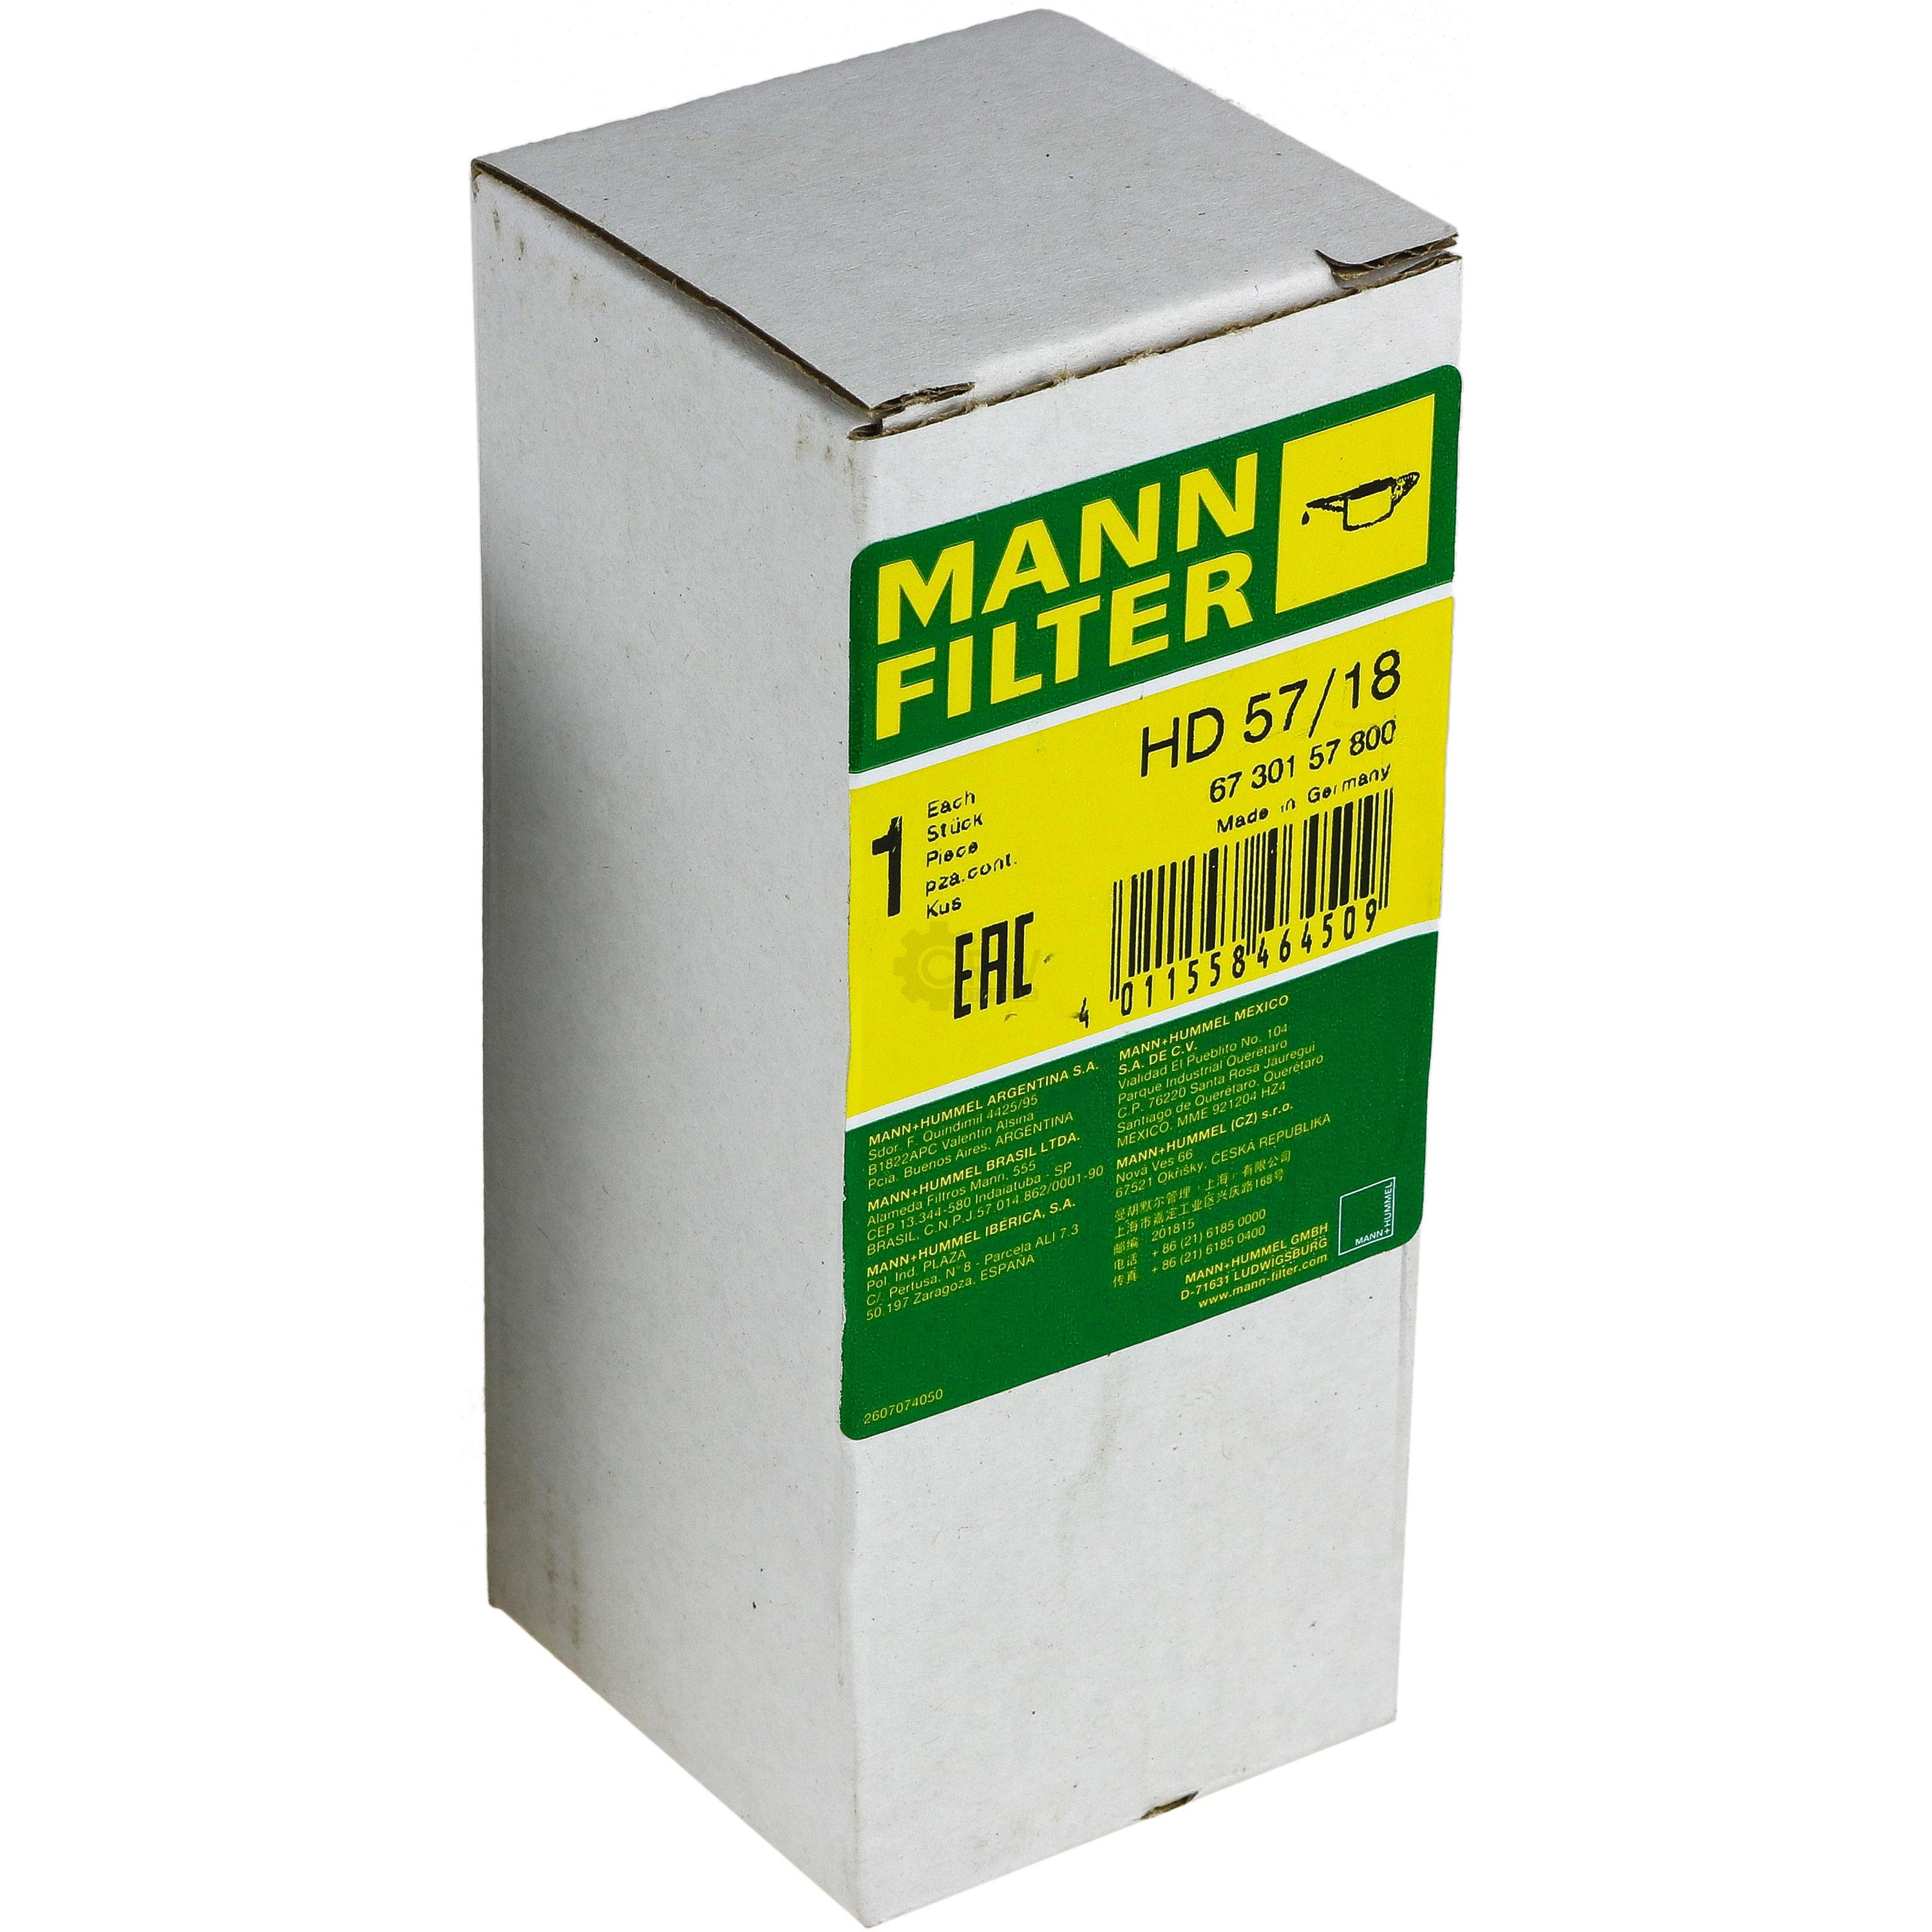 MANN-FILTER Filter für Arbeitshydraulik HD 57/18 Ölfilter Oil